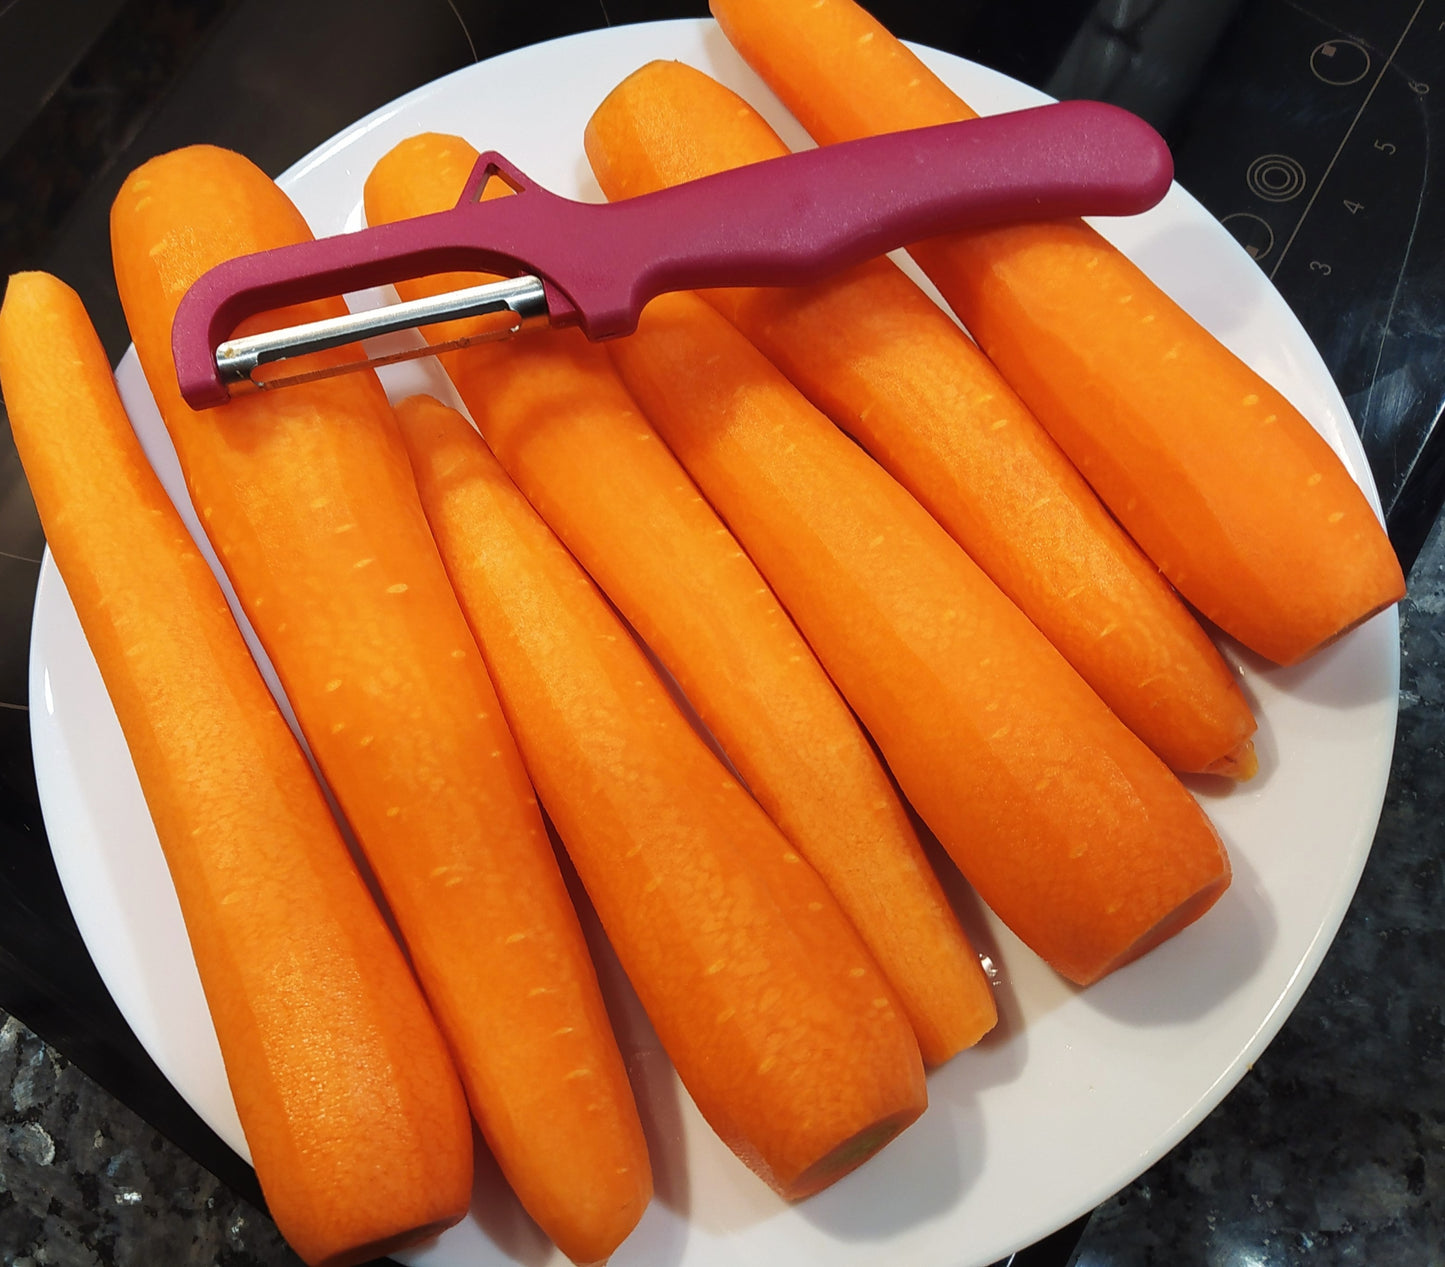 zanahorias recien peladas